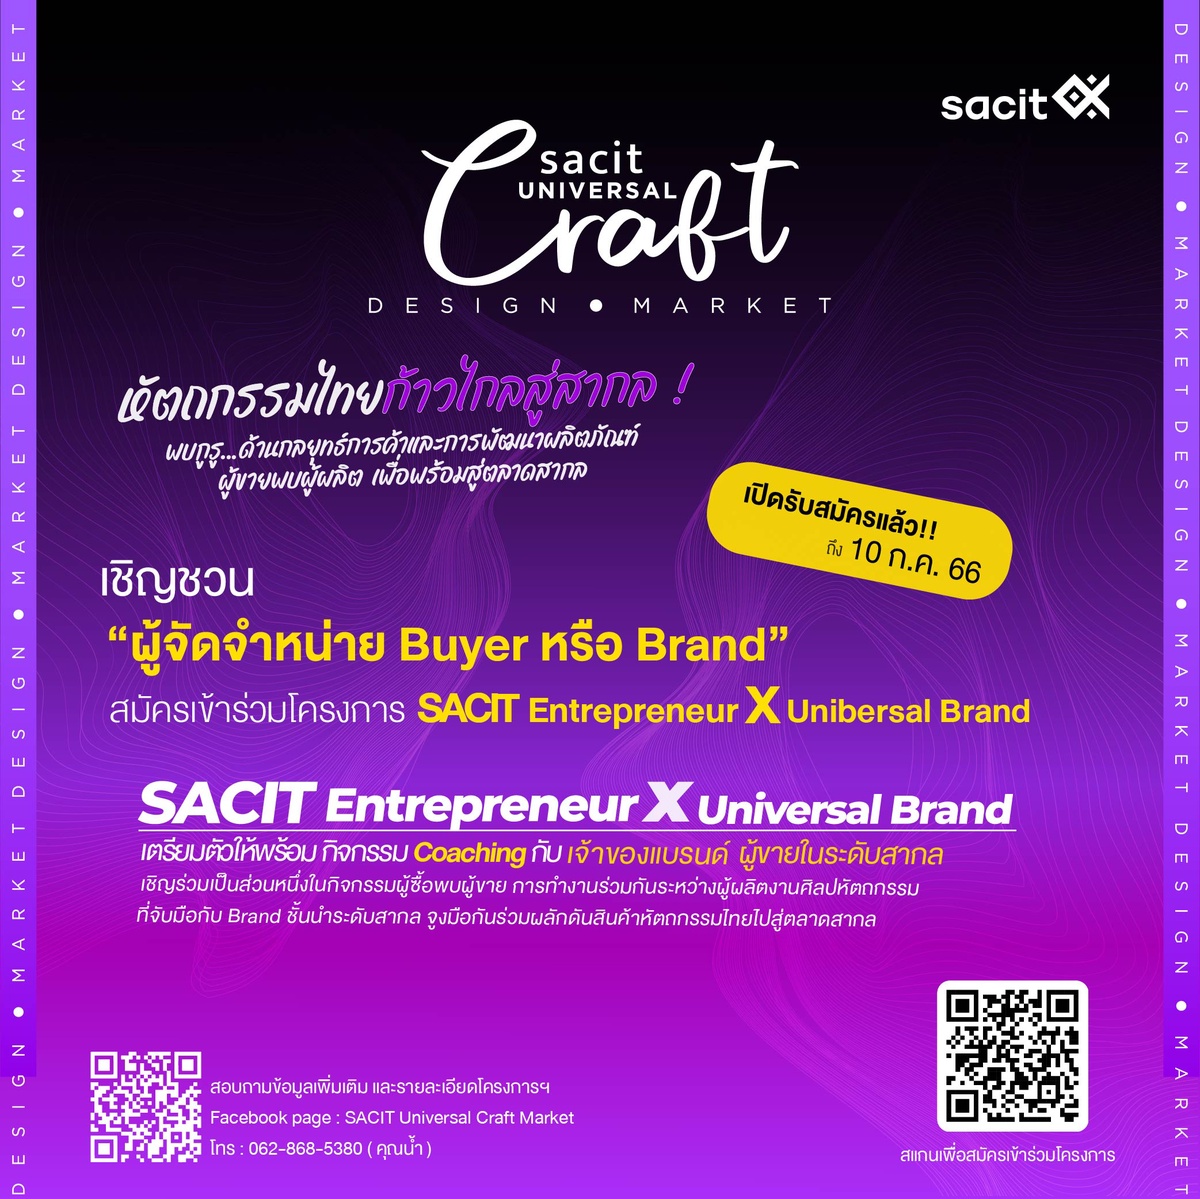 SACIT Universal Craft Market เชิญชวนผู้จัดจำหน่ายเข้าเป็นส่วนหนึ่งในโครงการพัฒนารูปแบบผลิตภัณฑ์เพื่อตลาดสากล